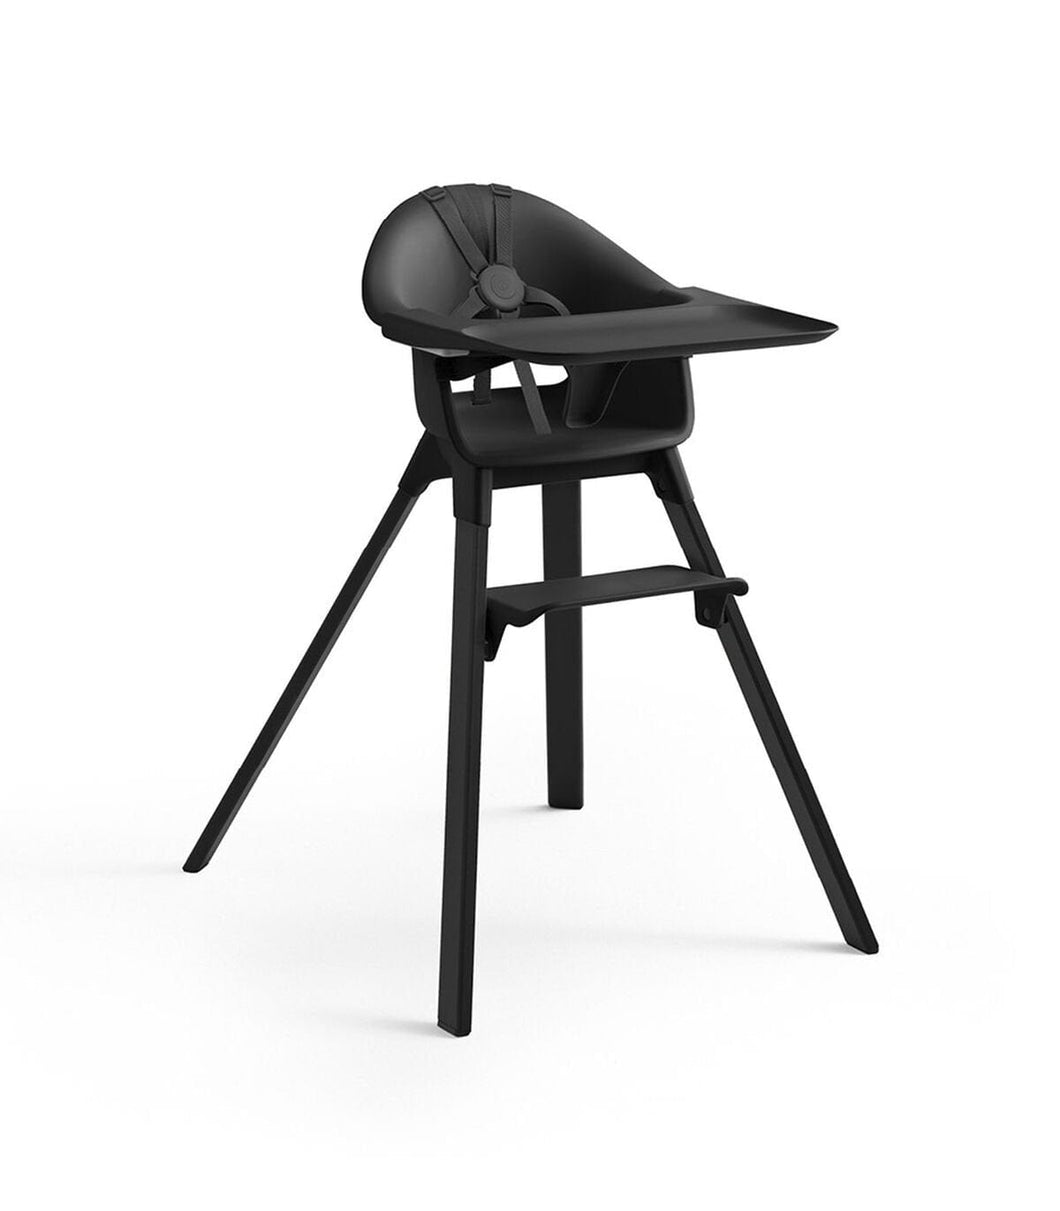 Stokke Stokke Clikk High Chair Midnight Black Stokke® Clikk High Chair